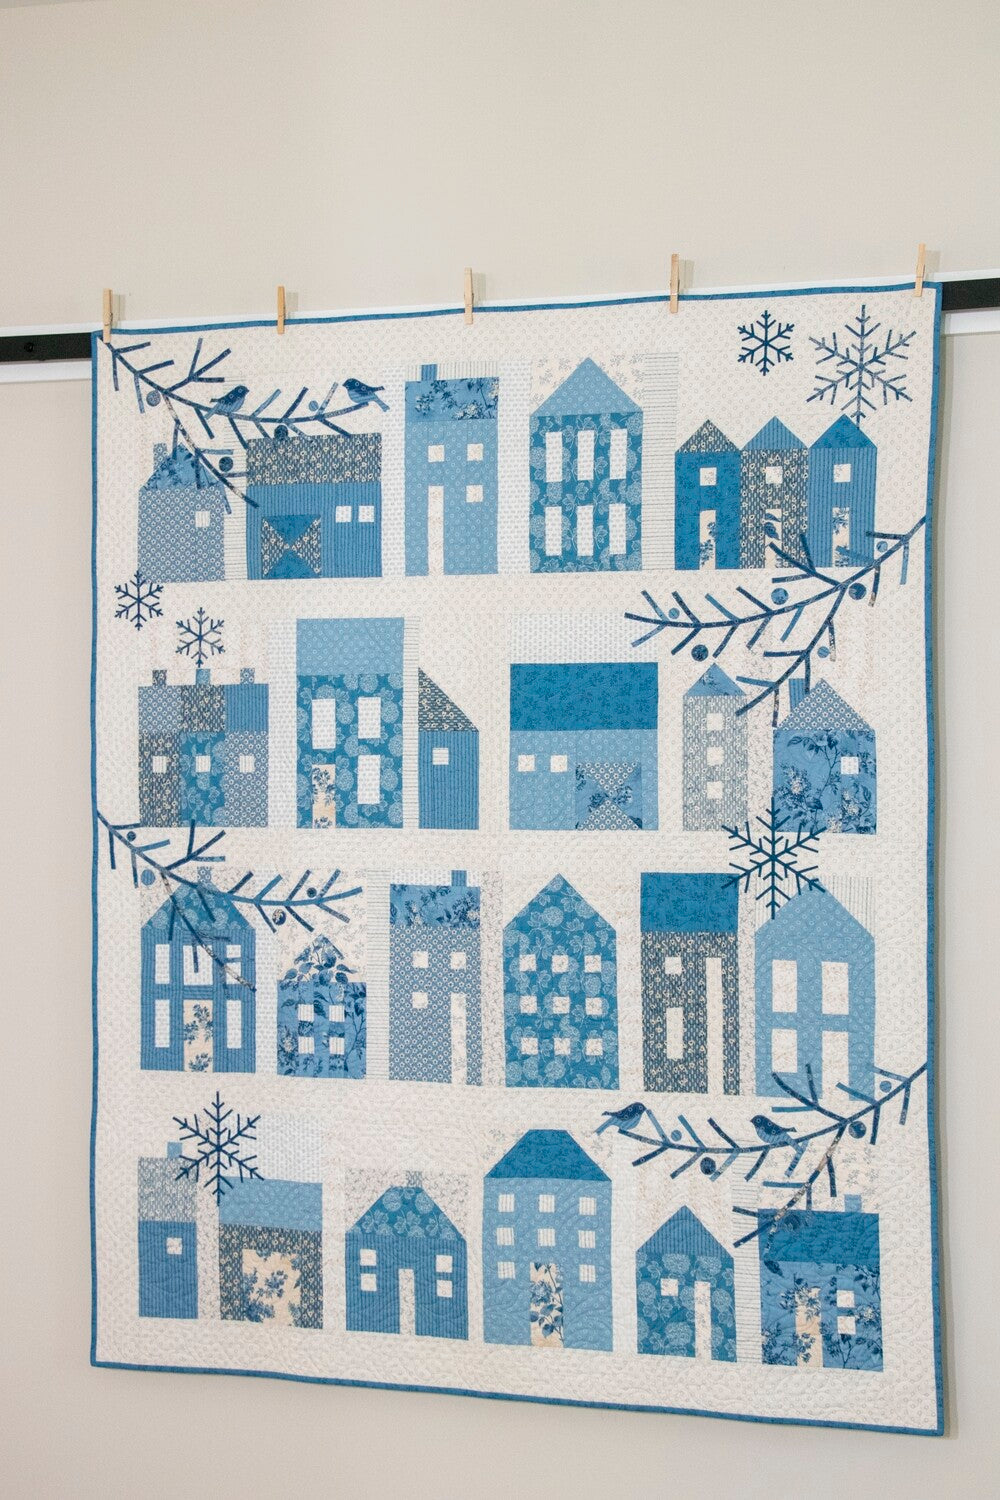 Winter Village Pieced Quilt Pattern